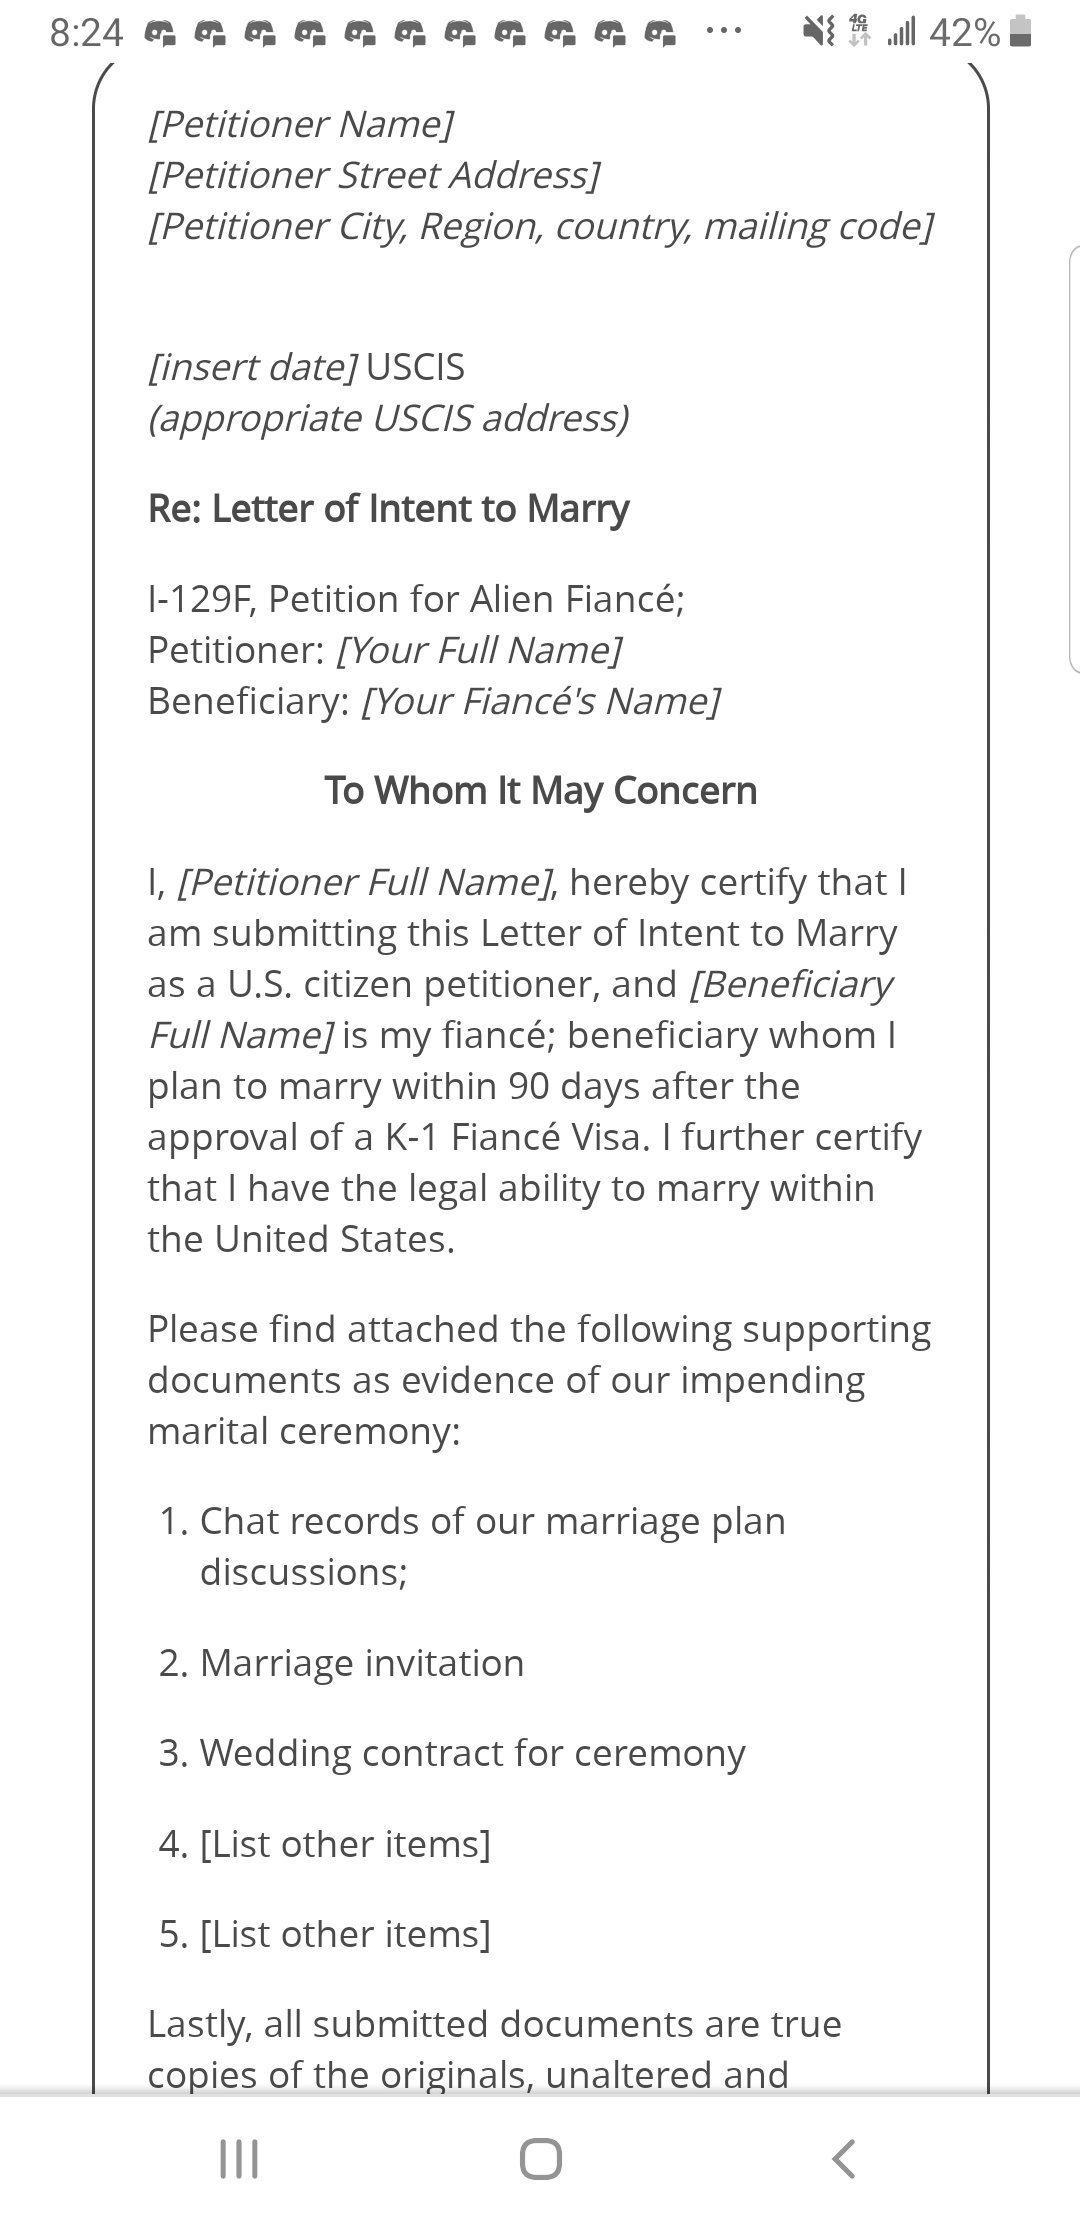 sample cover letter for fiance visa uk